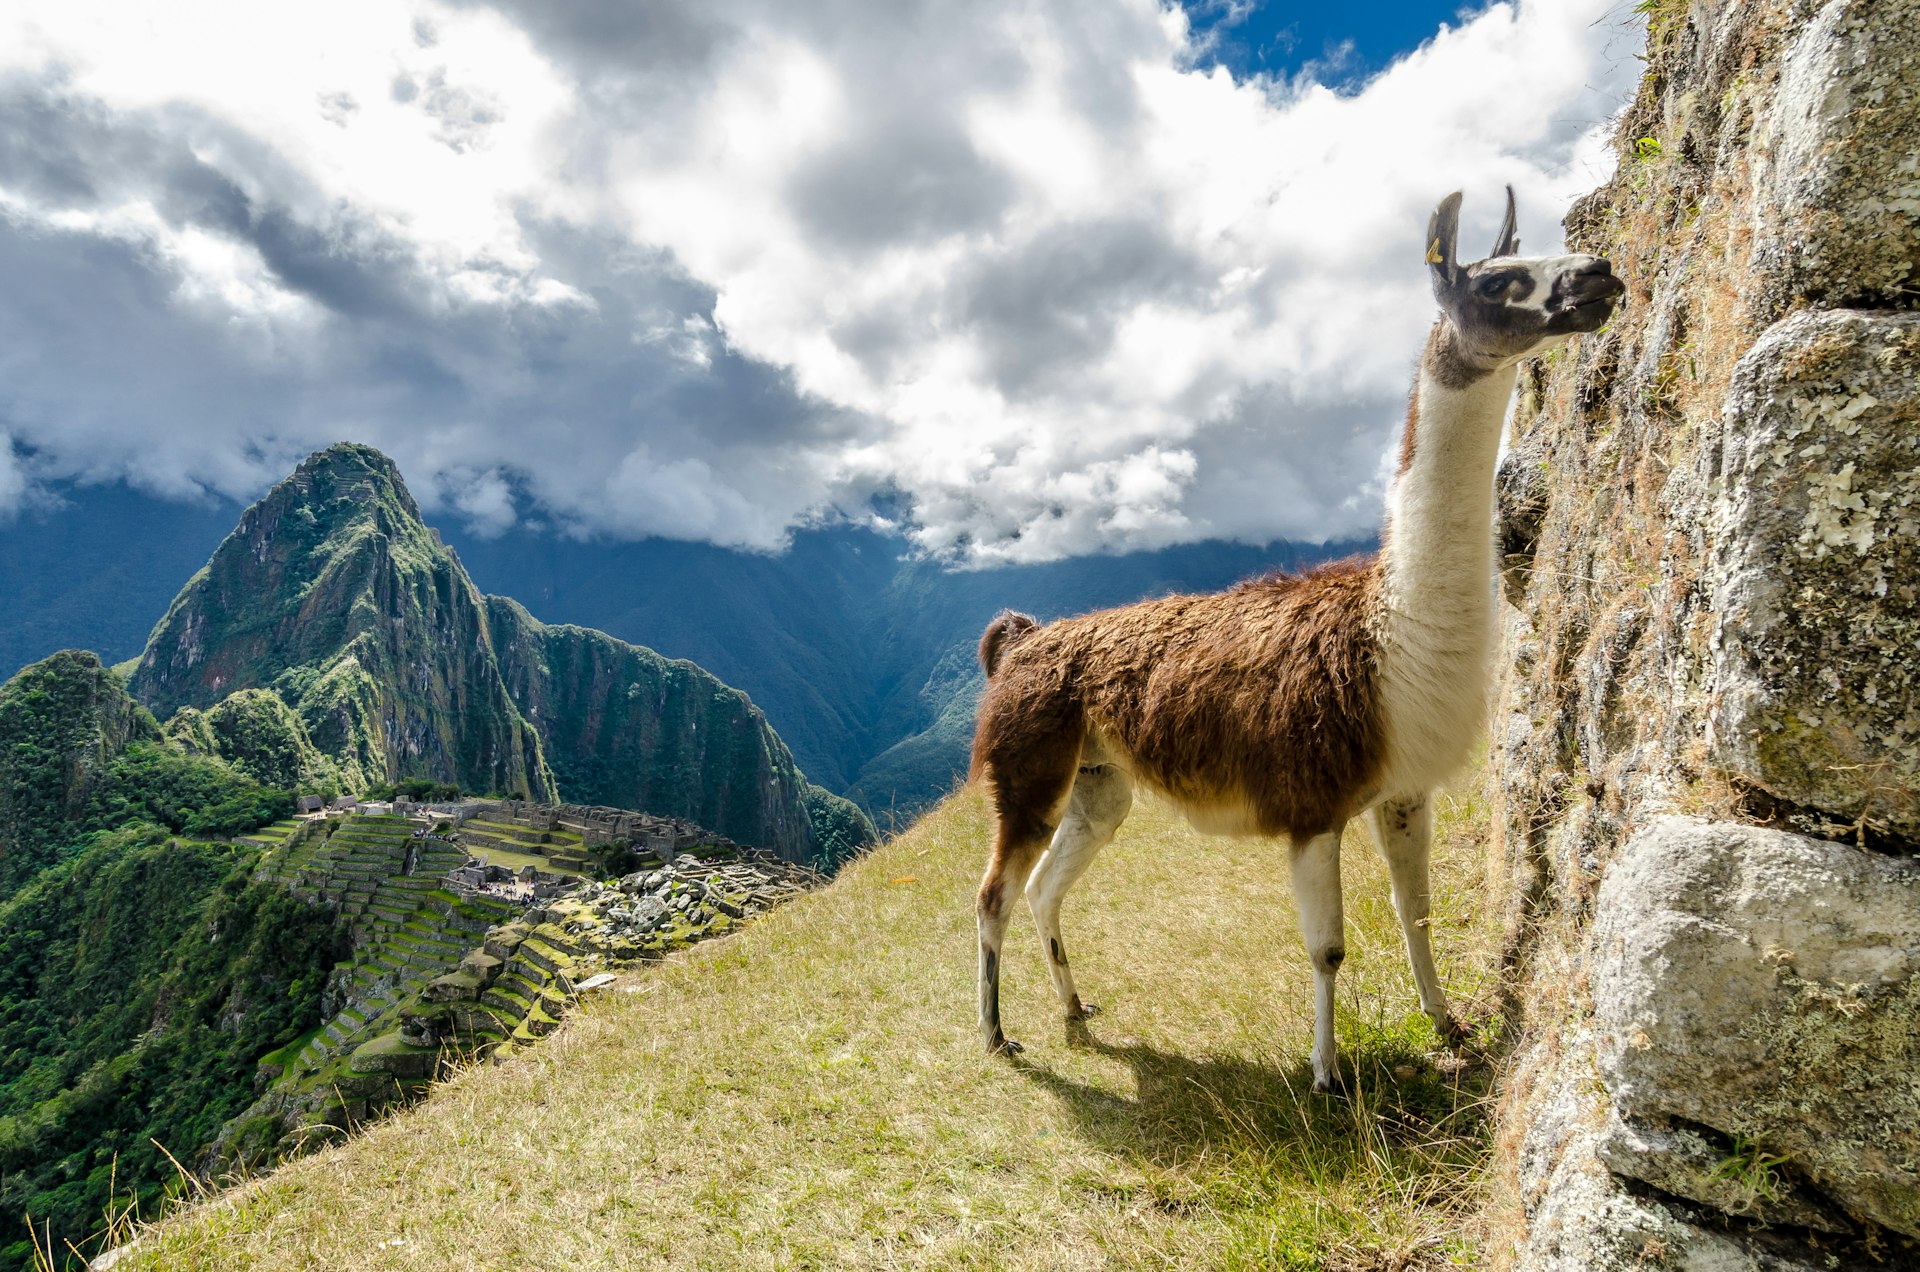 500px Photo ID: 92123455 - Enjoying Machu Pichhu with a llama.